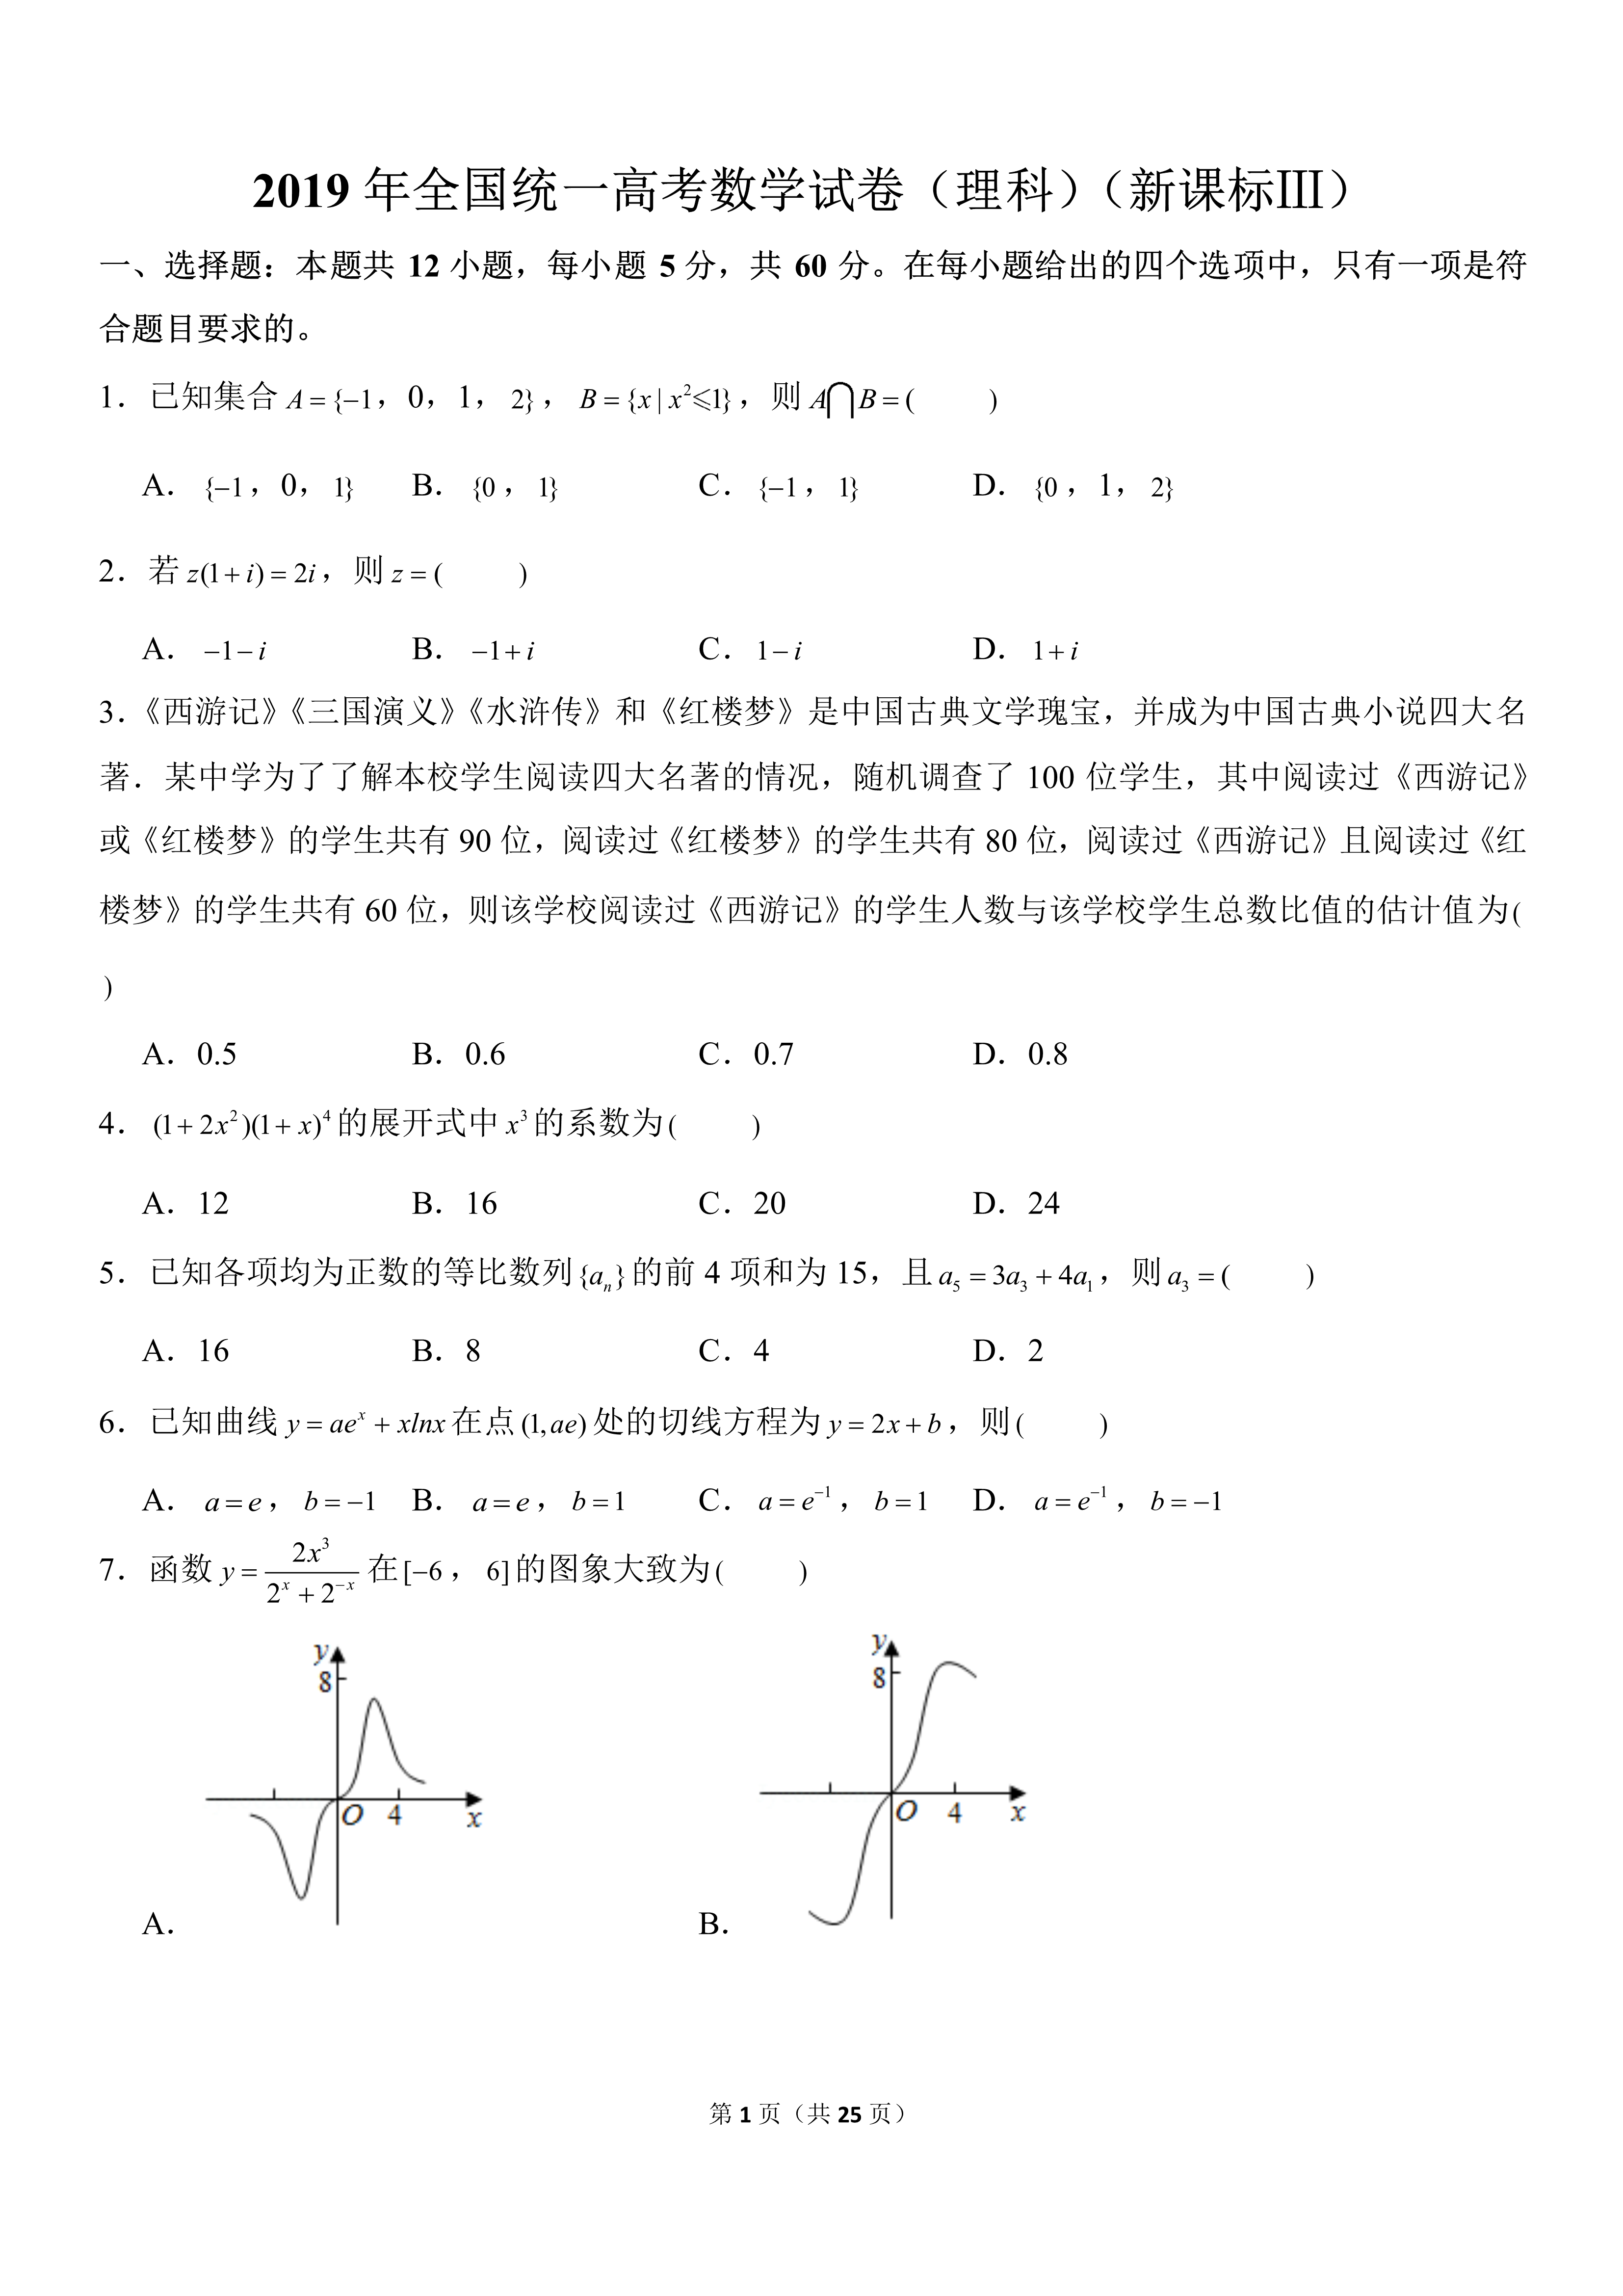 2019年全国统一高考数学试卷理科新课标 网络 Weixin 33736832的博客